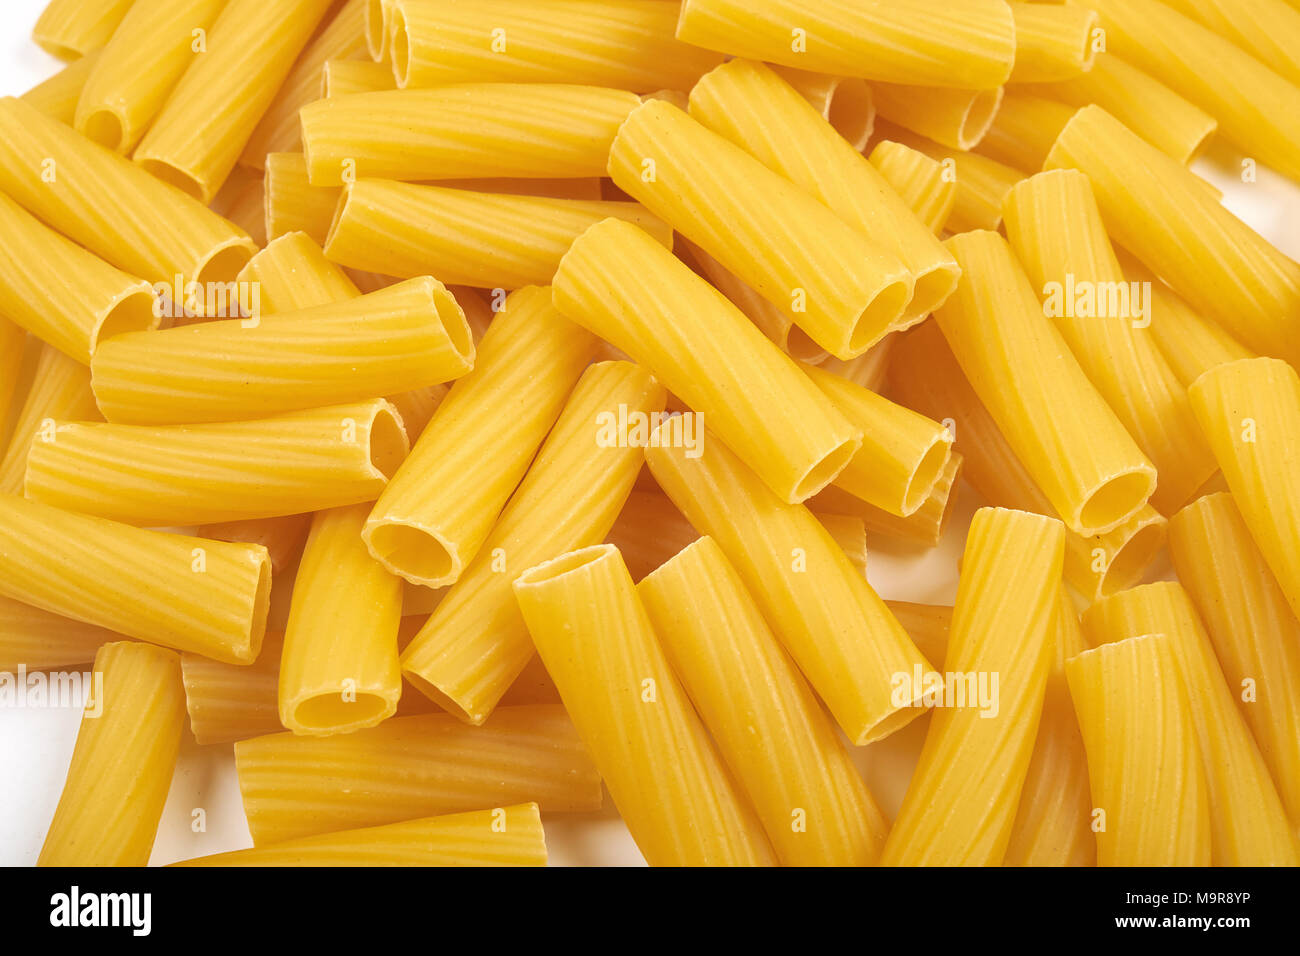 Rigatoni italian pasta isolated on white background Stock Photo